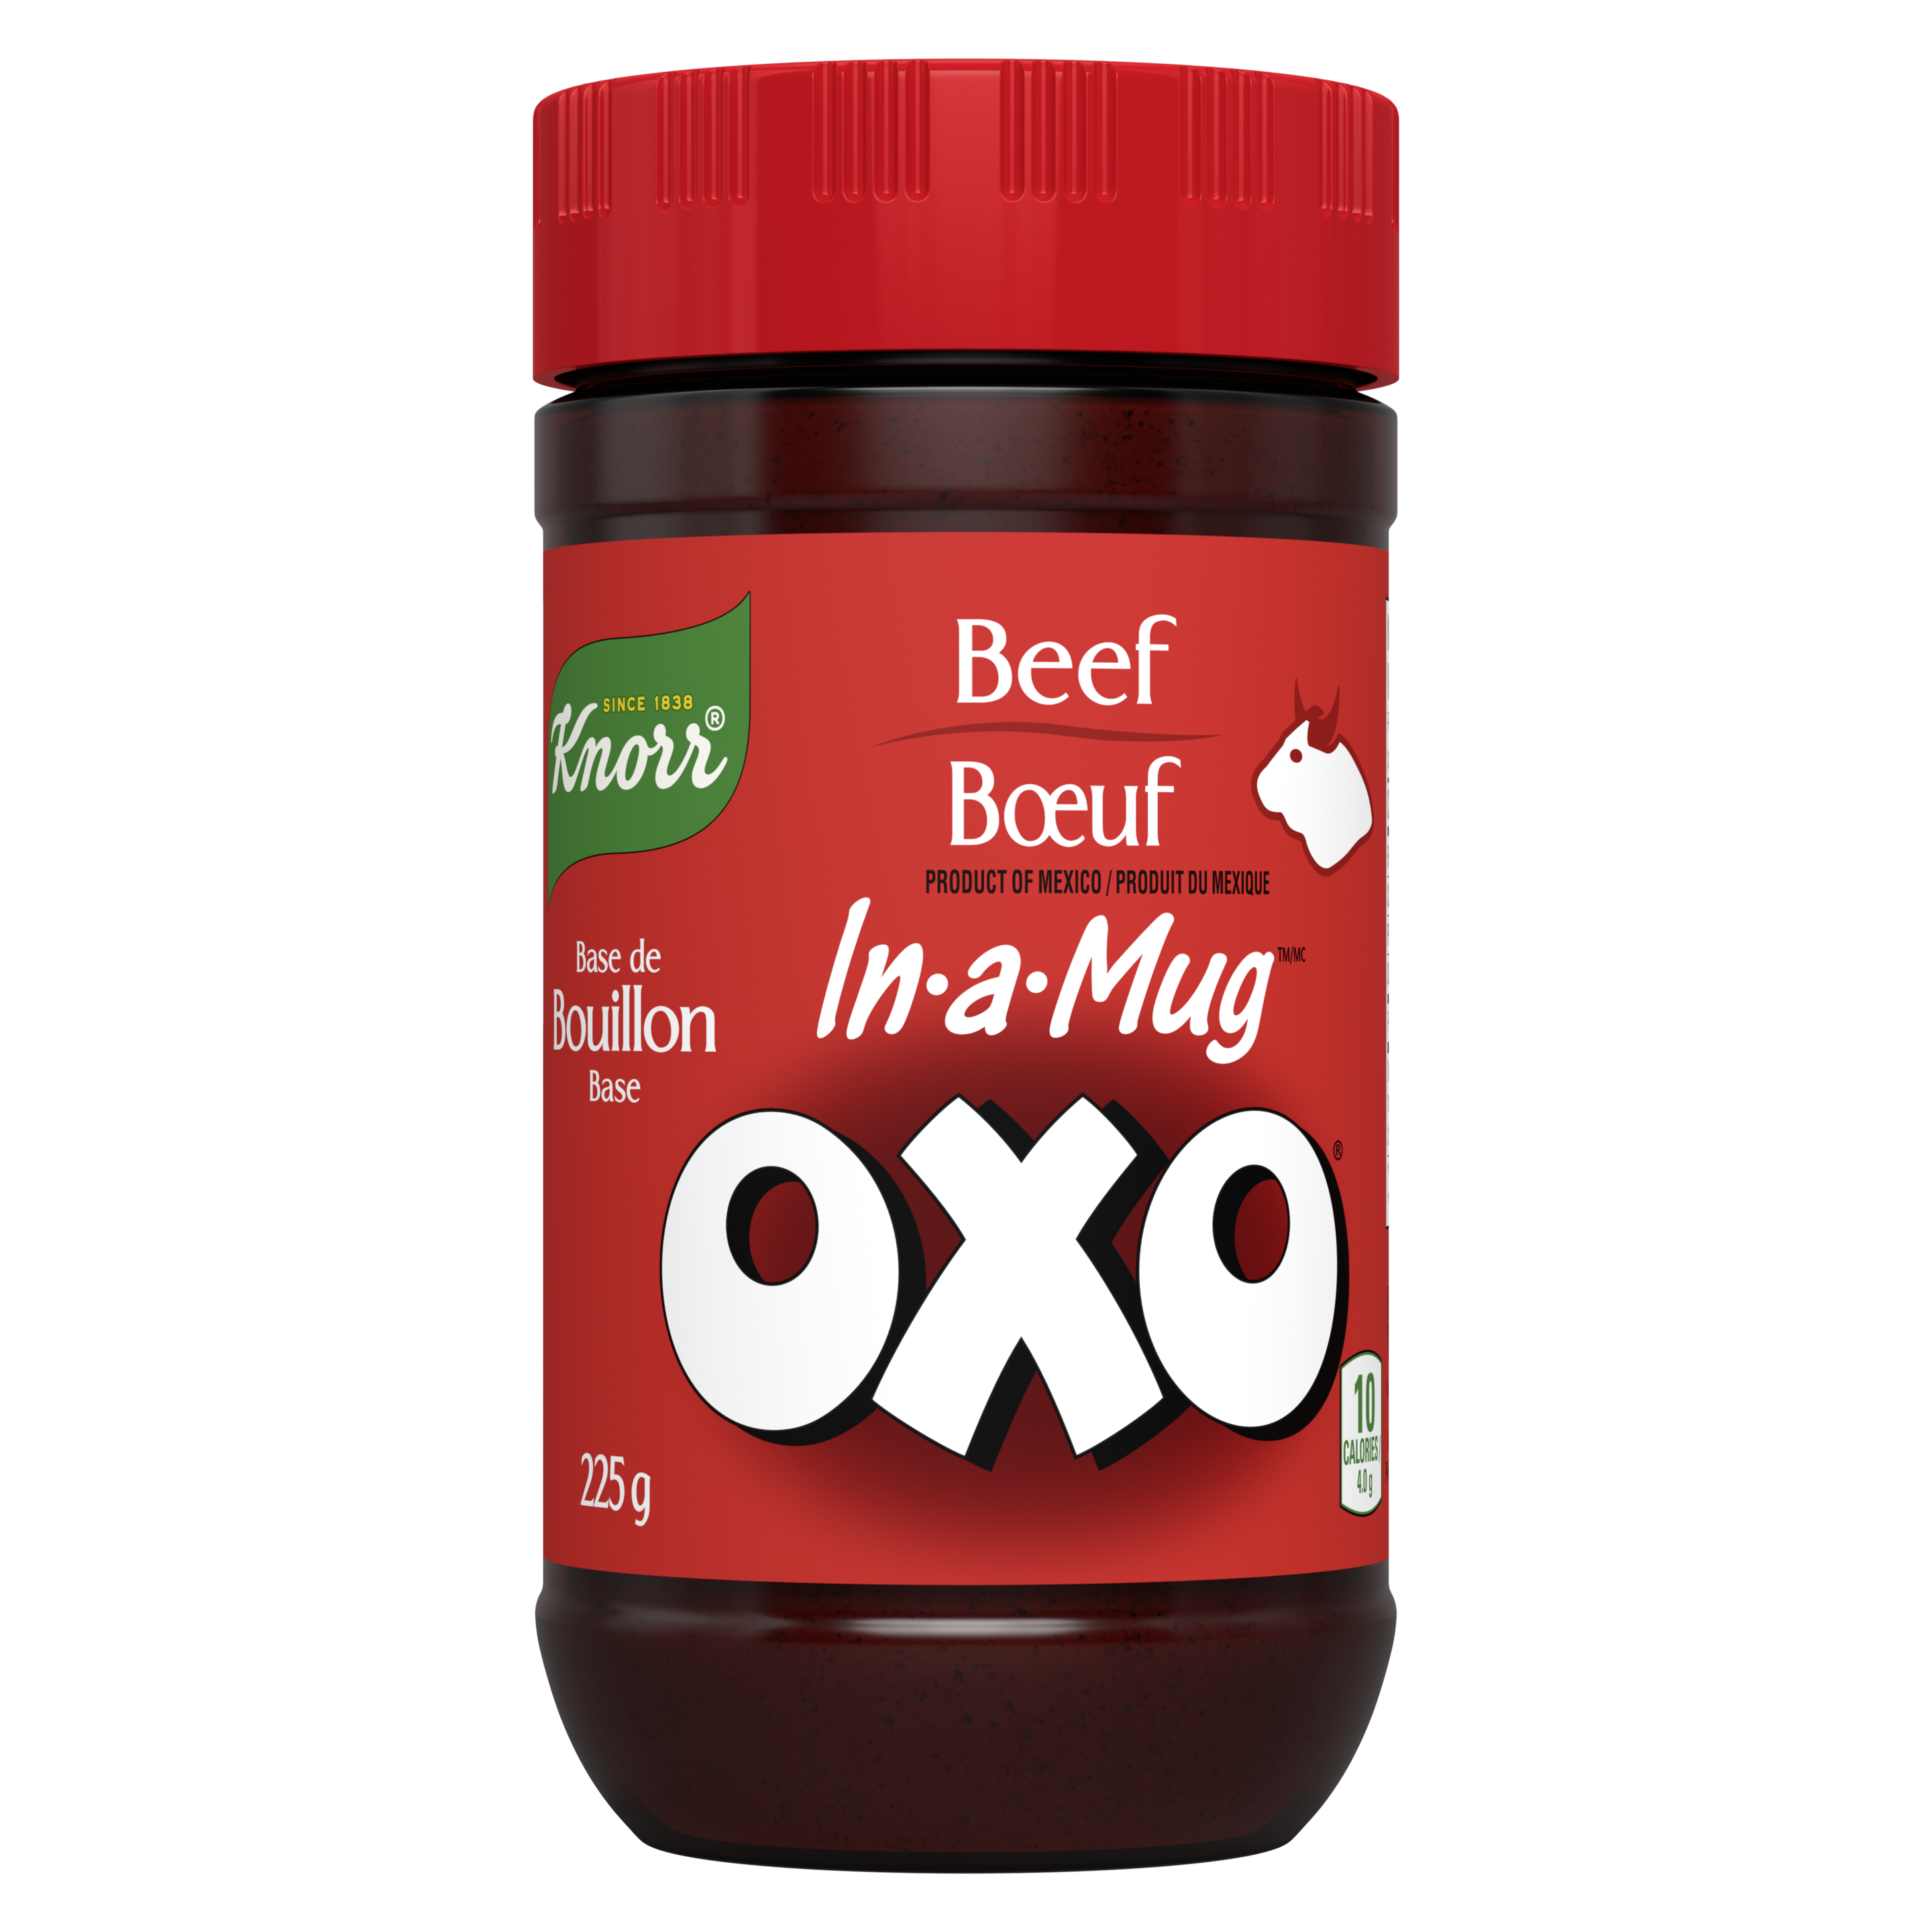 Base de bouillon de bœuf in-a-mug OXO